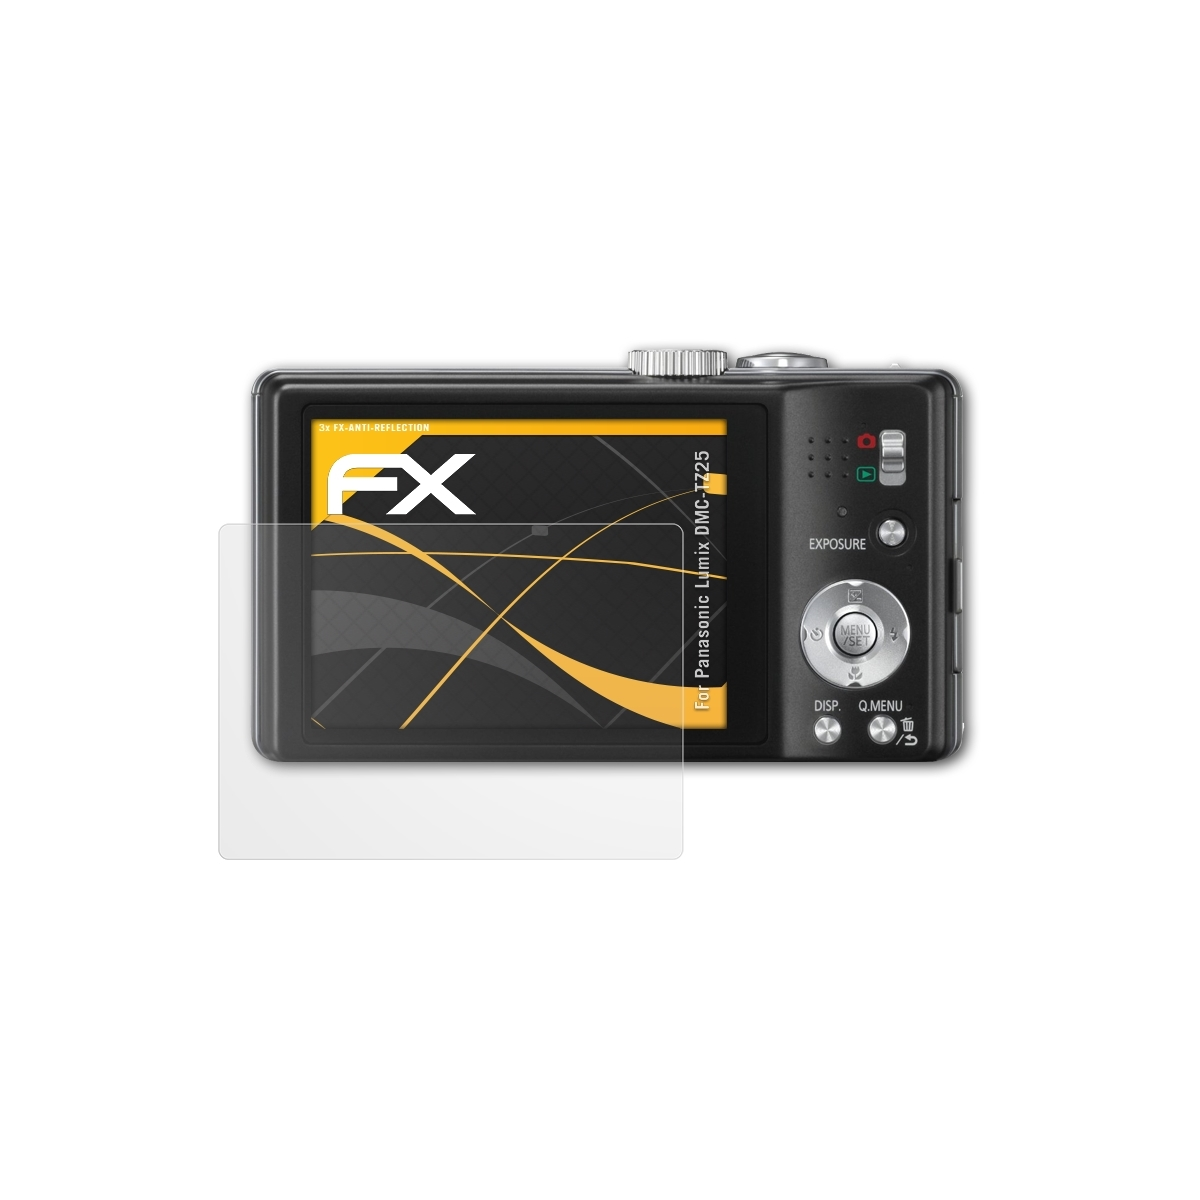 ATFOLIX DMC-TZ25) Displayschutz(für Panasonic Lumix 3x FX-Antireflex